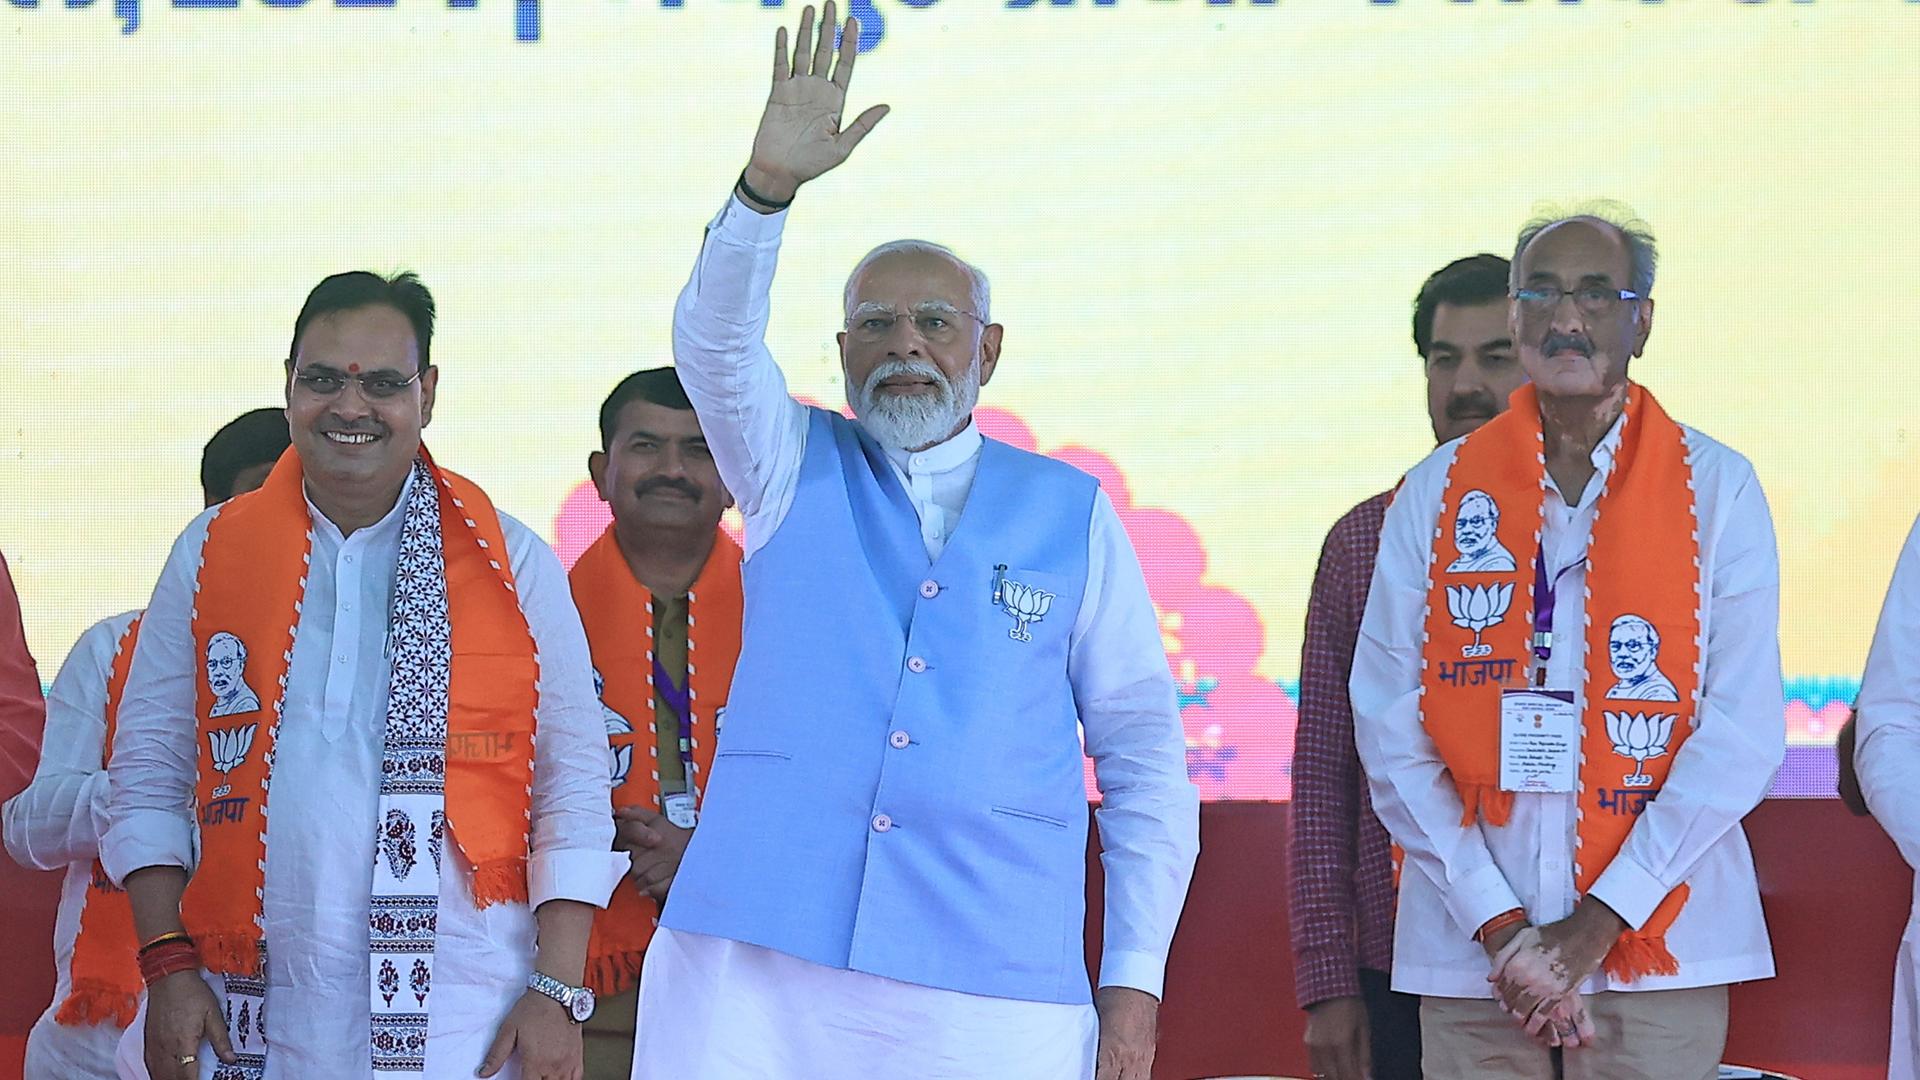 Der indische Premierministers Narendra Modi steht auf einer Bühne. Er hat eine Hand zum Gruß erhoben. 